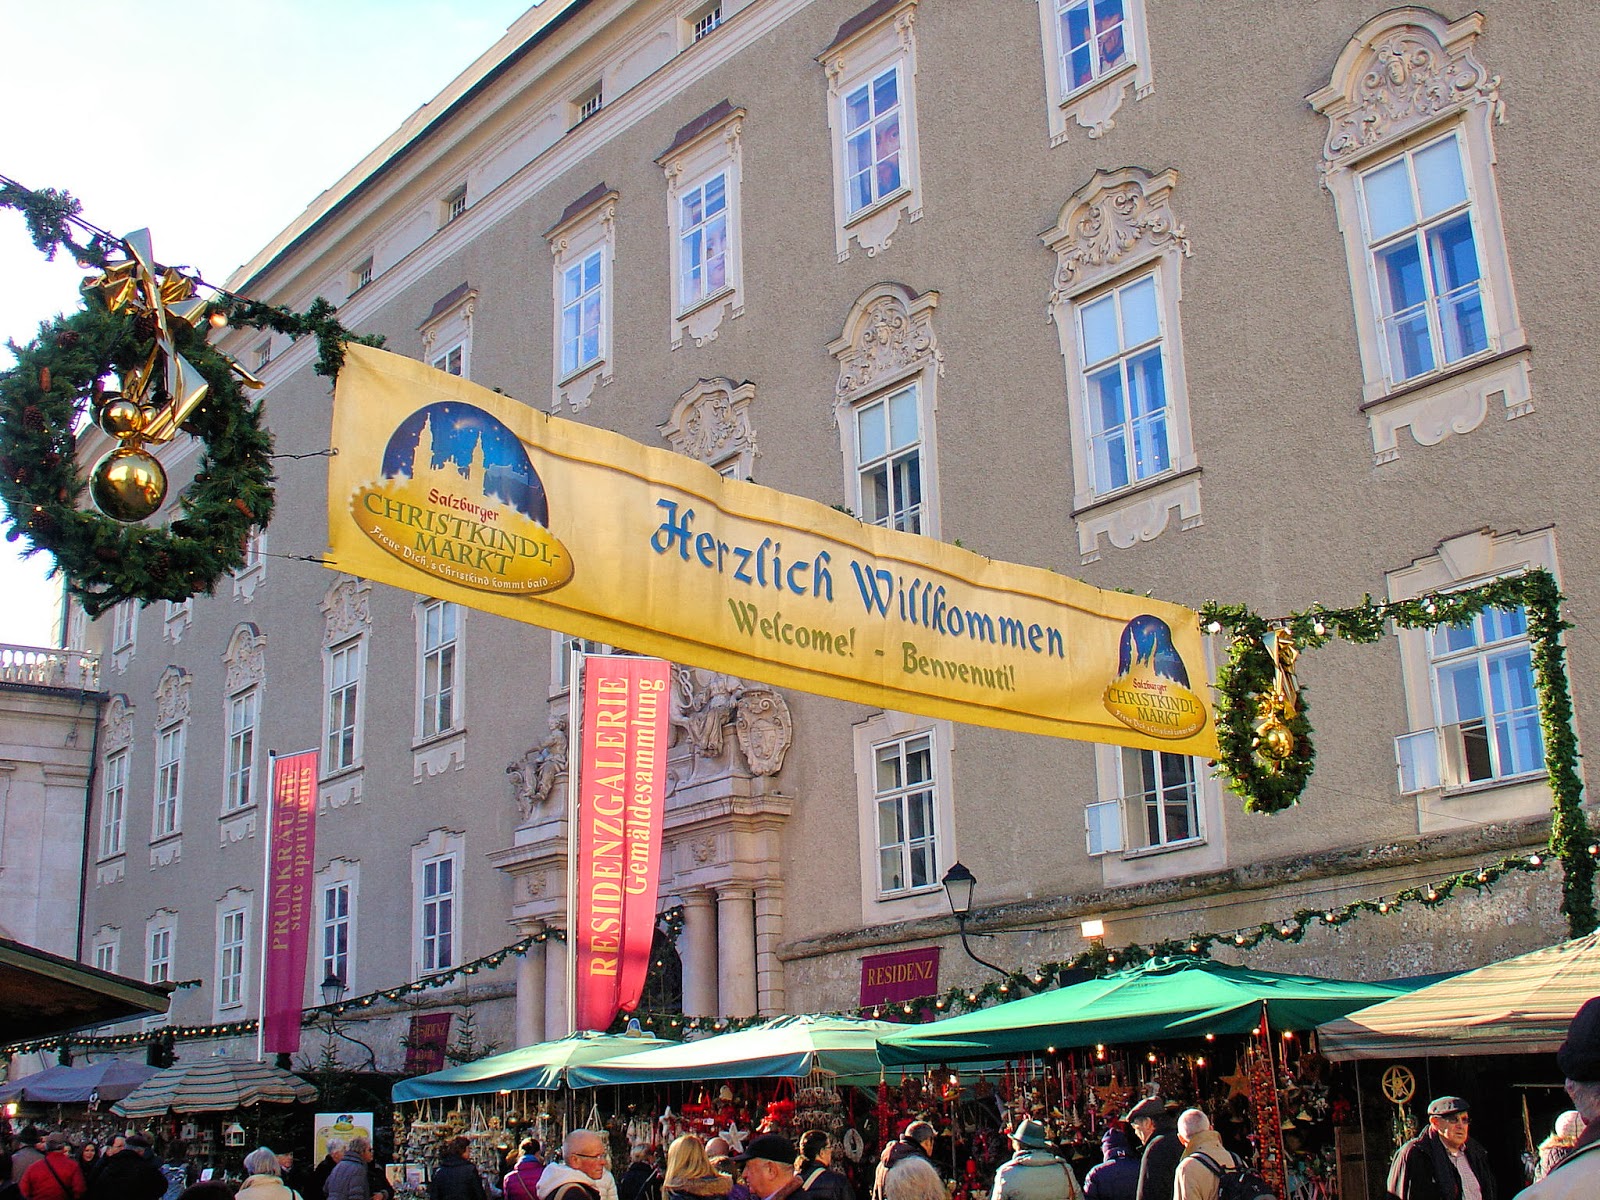 As the sign states, Herzlich Willkommen to the Salzburg Christkindlmarkt in the Domplatz!